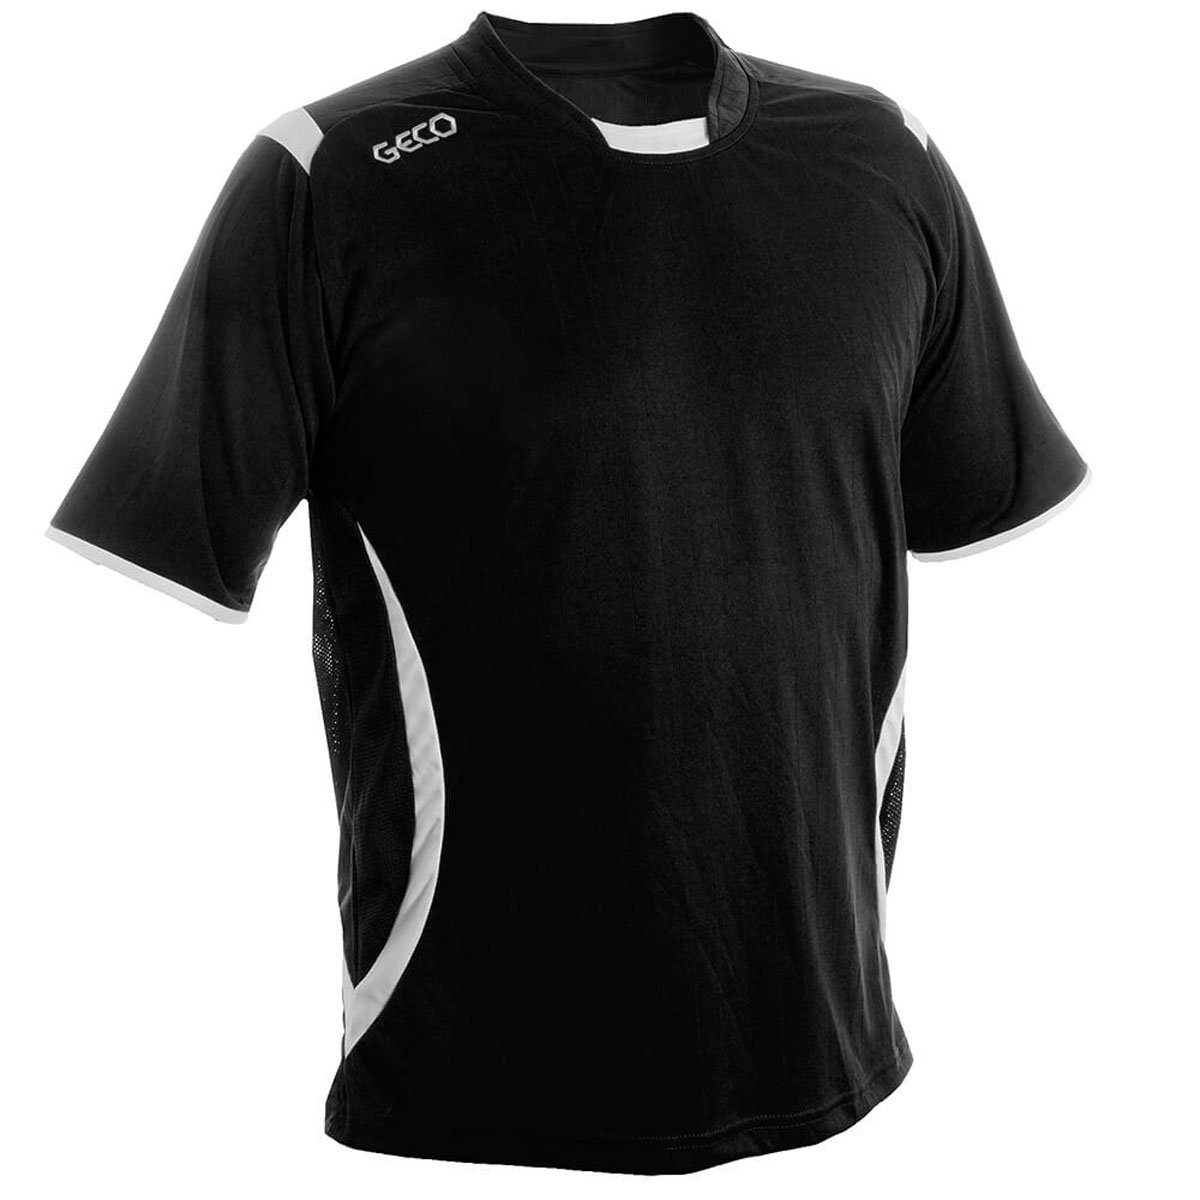 Geco Sportswear Fußballtrikot Fußballtrikot kurzarm Trikot Mesheinsätze Levante zweifarbig schwarz/weiß seitliche Fußball